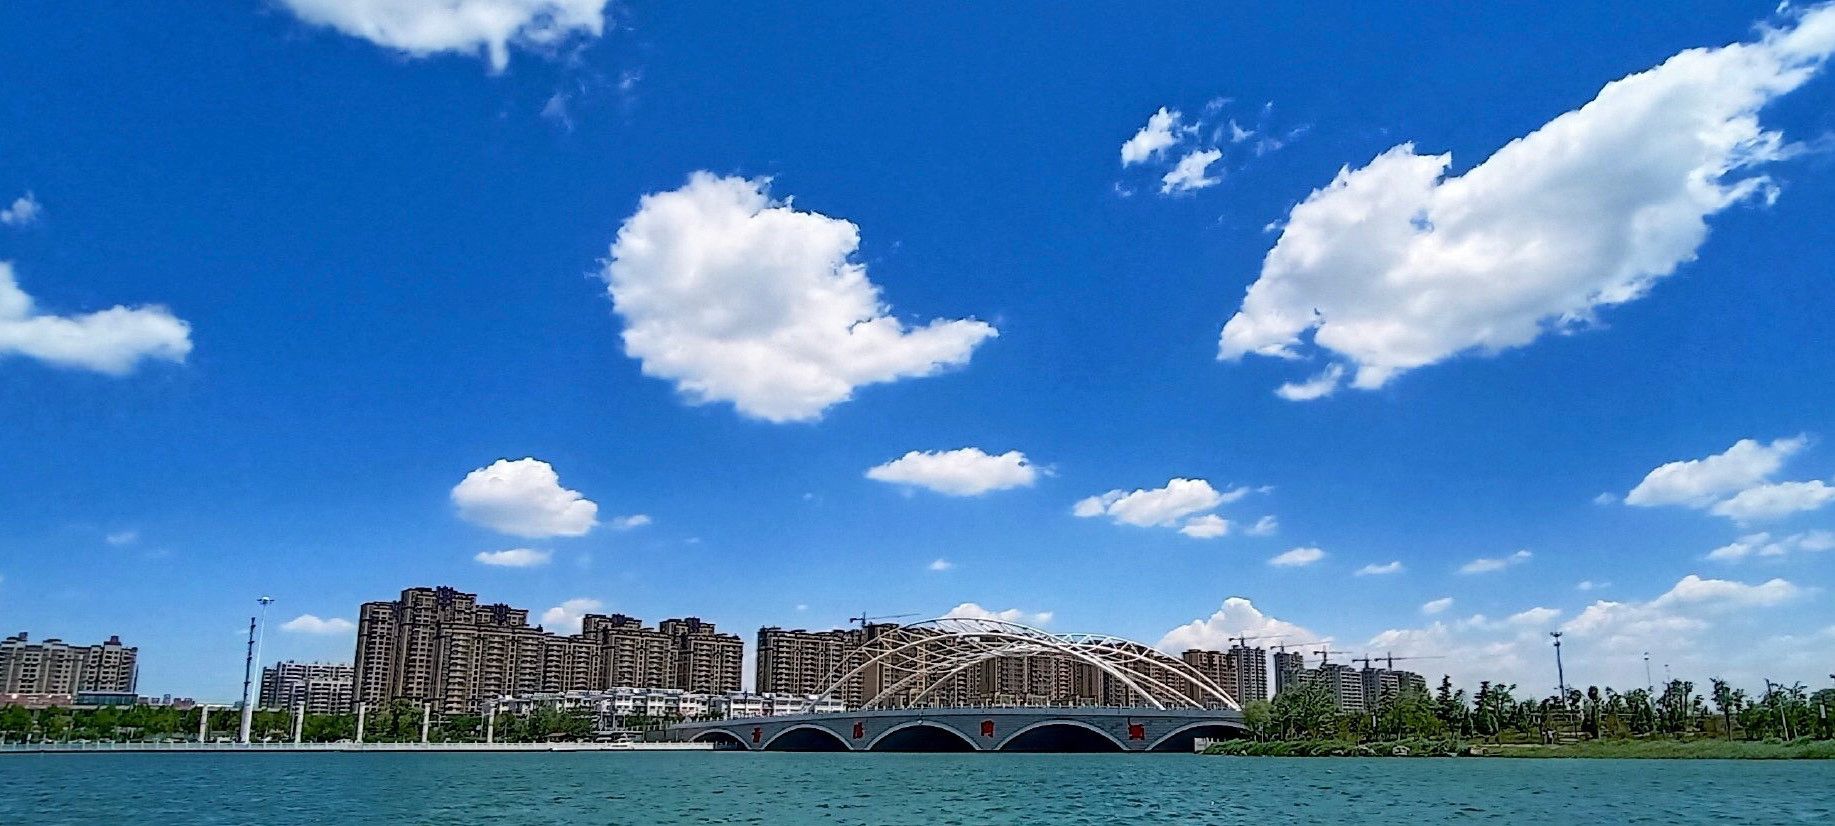 阳谷金水湖大桥图片